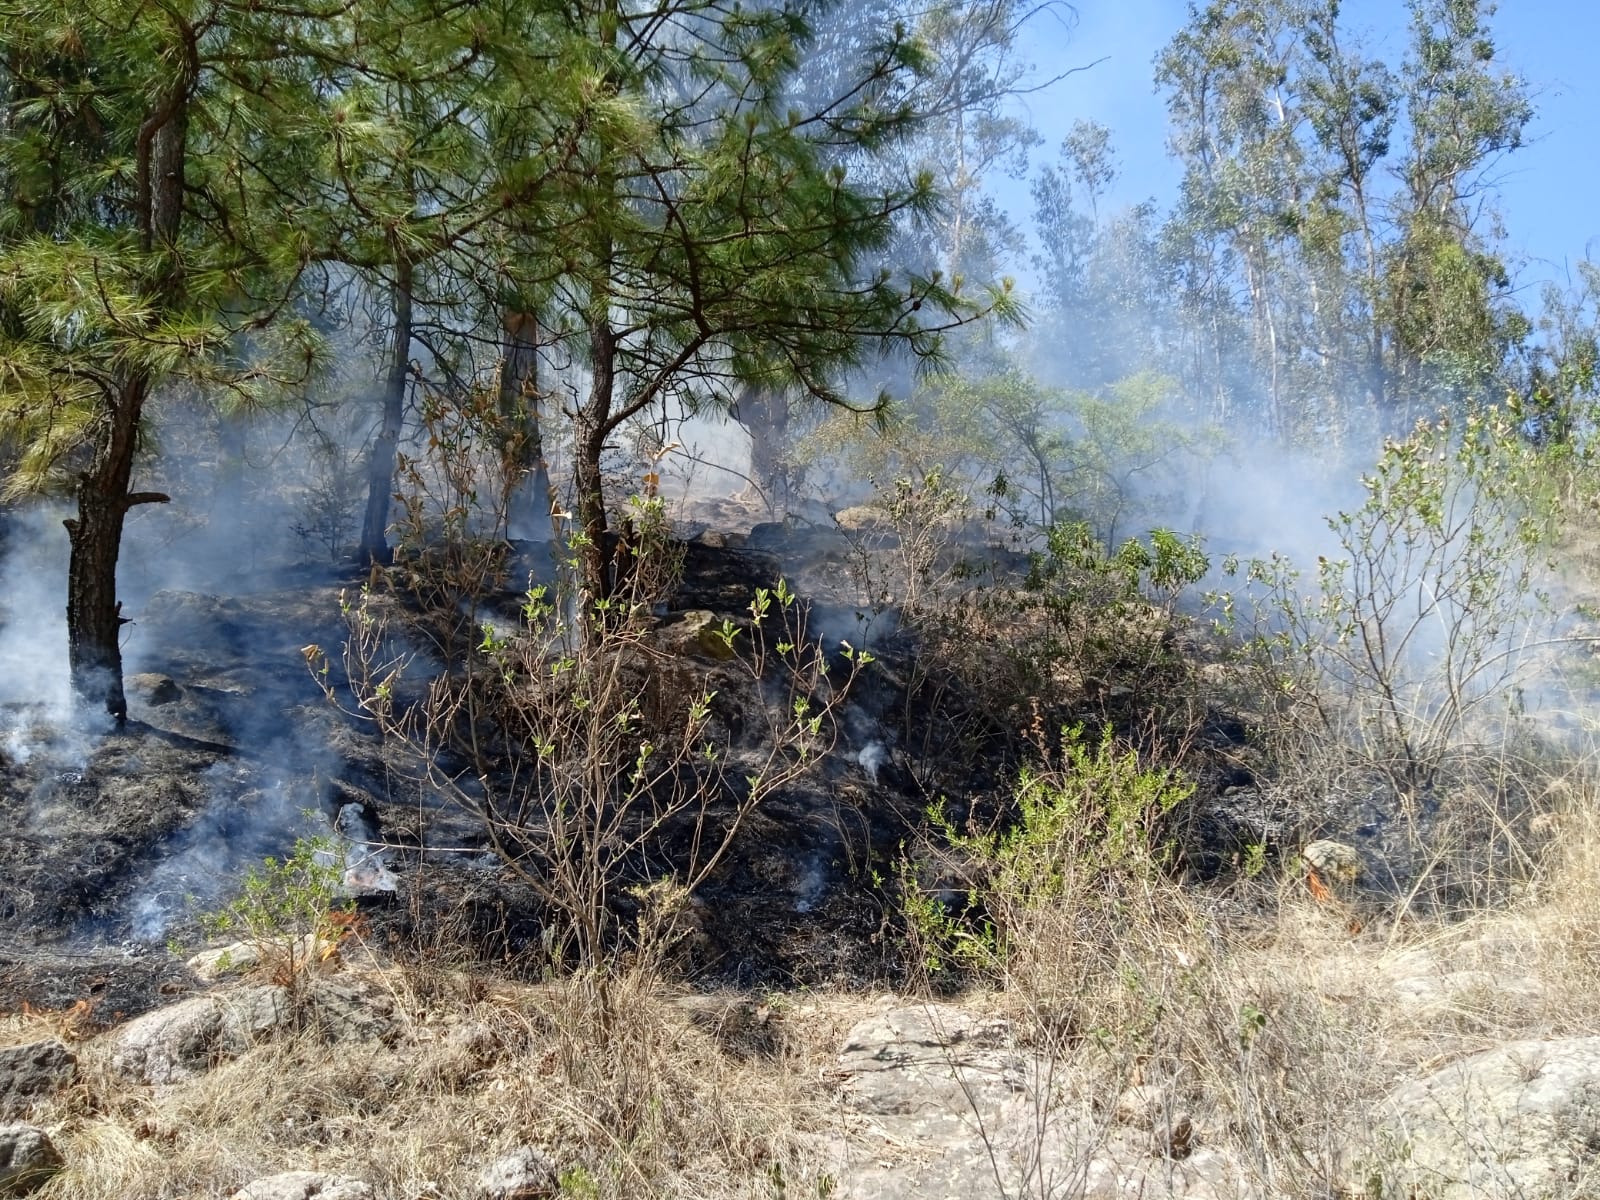 Cofom atiende y controla 4 incendios forestales en Michoacán